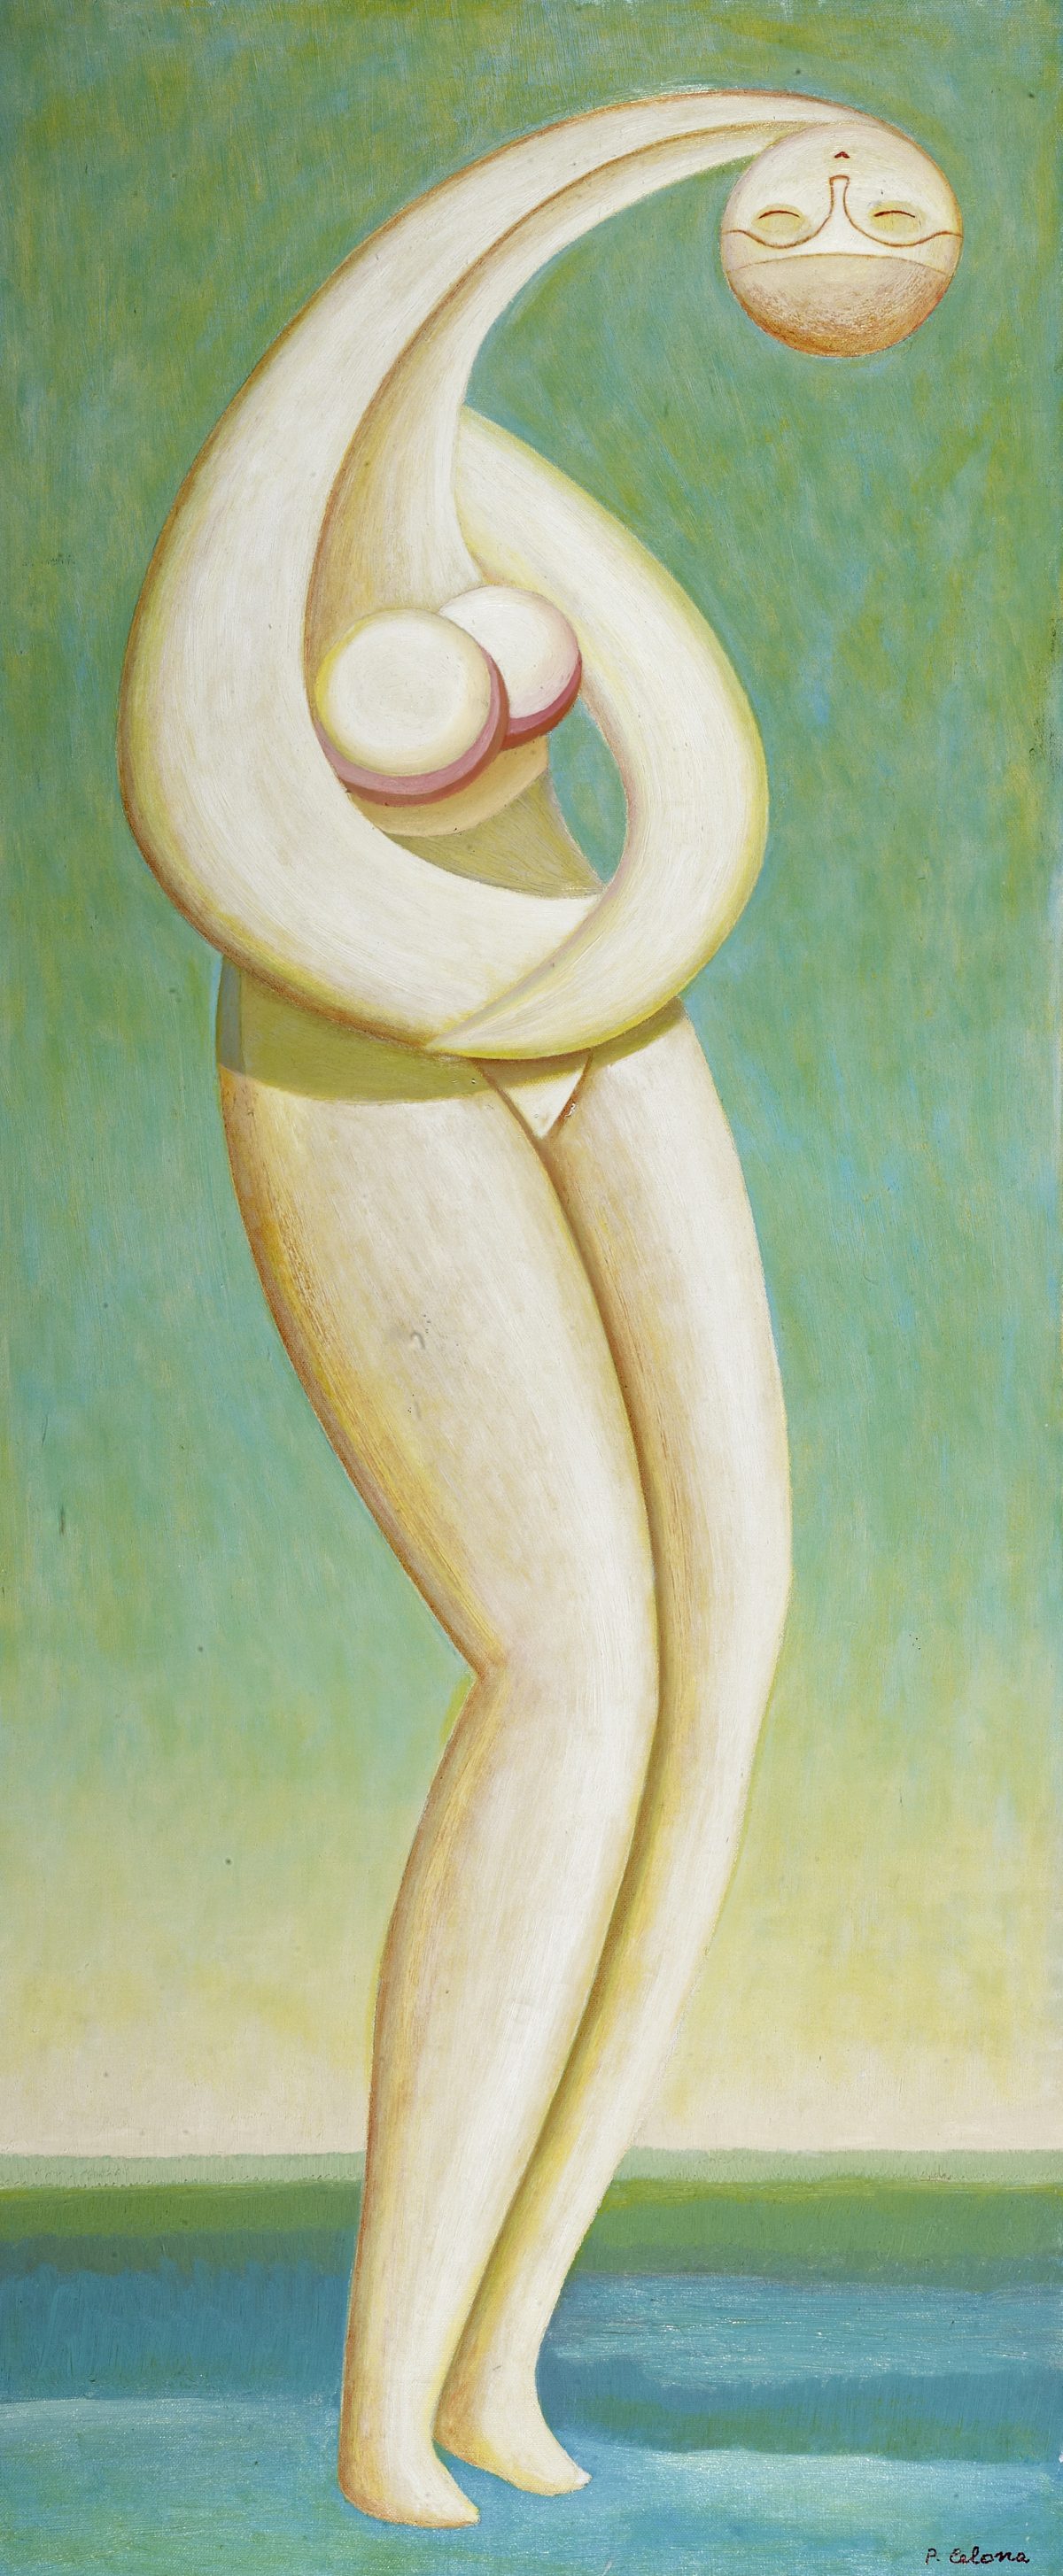 Danzatrice sull'acqua, 1980
Olio su tela
120 x 50 cm,
FV026